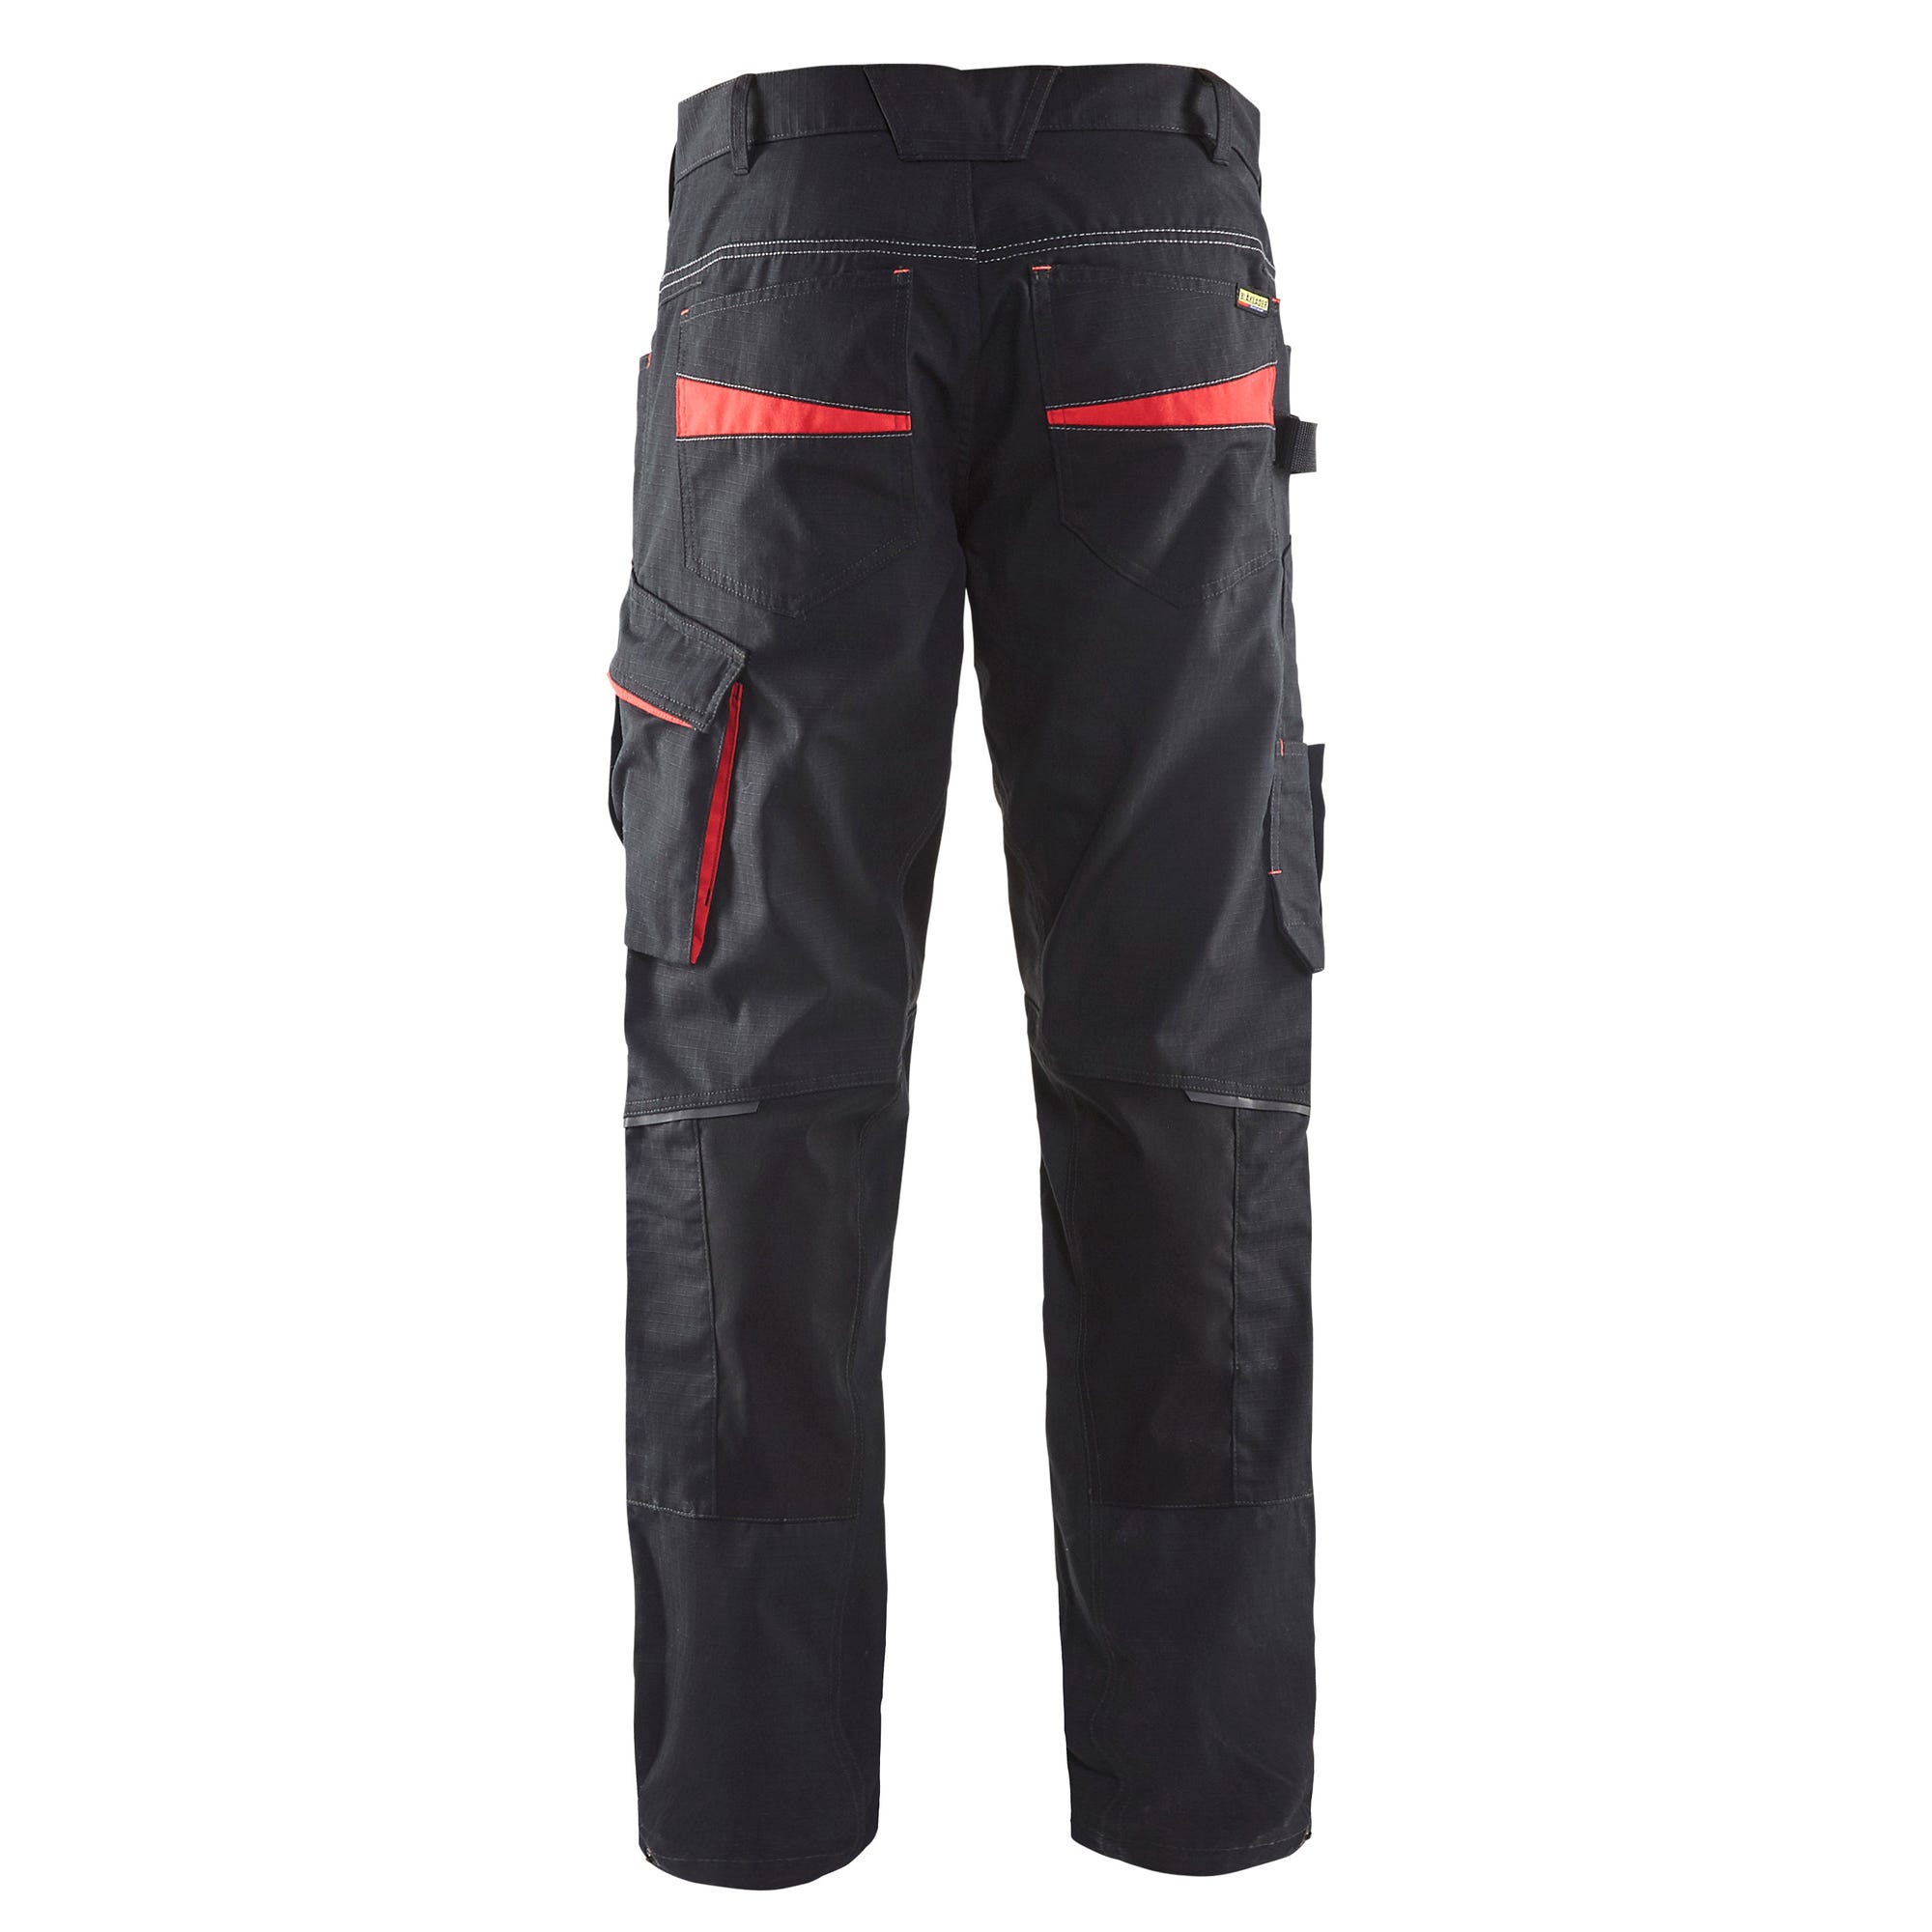 Pantalon de travail stretch Noir/Rouge T.38 1495 - BLAKLADER 1